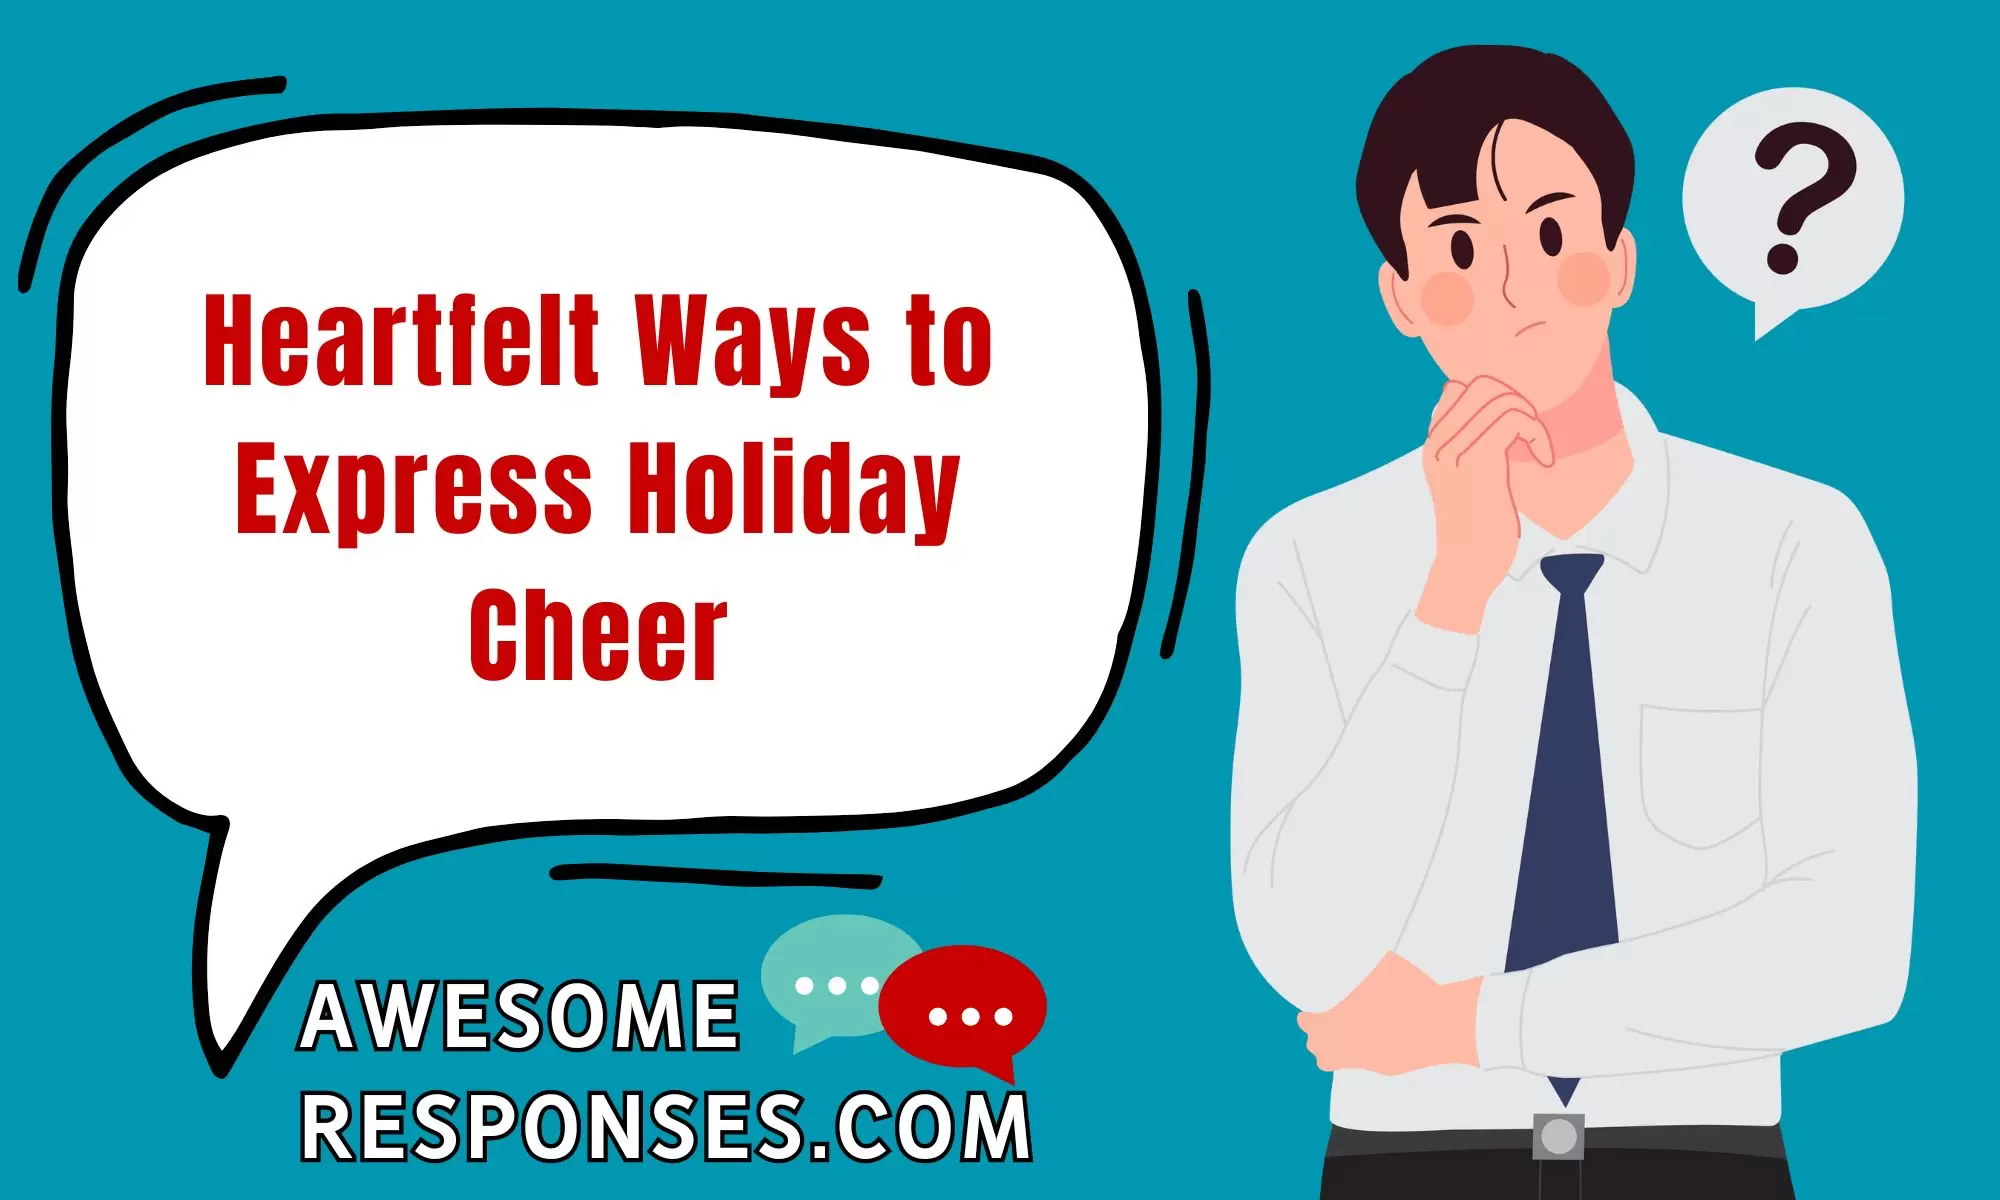 Heartfelt Ways to Express Holiday Cheer